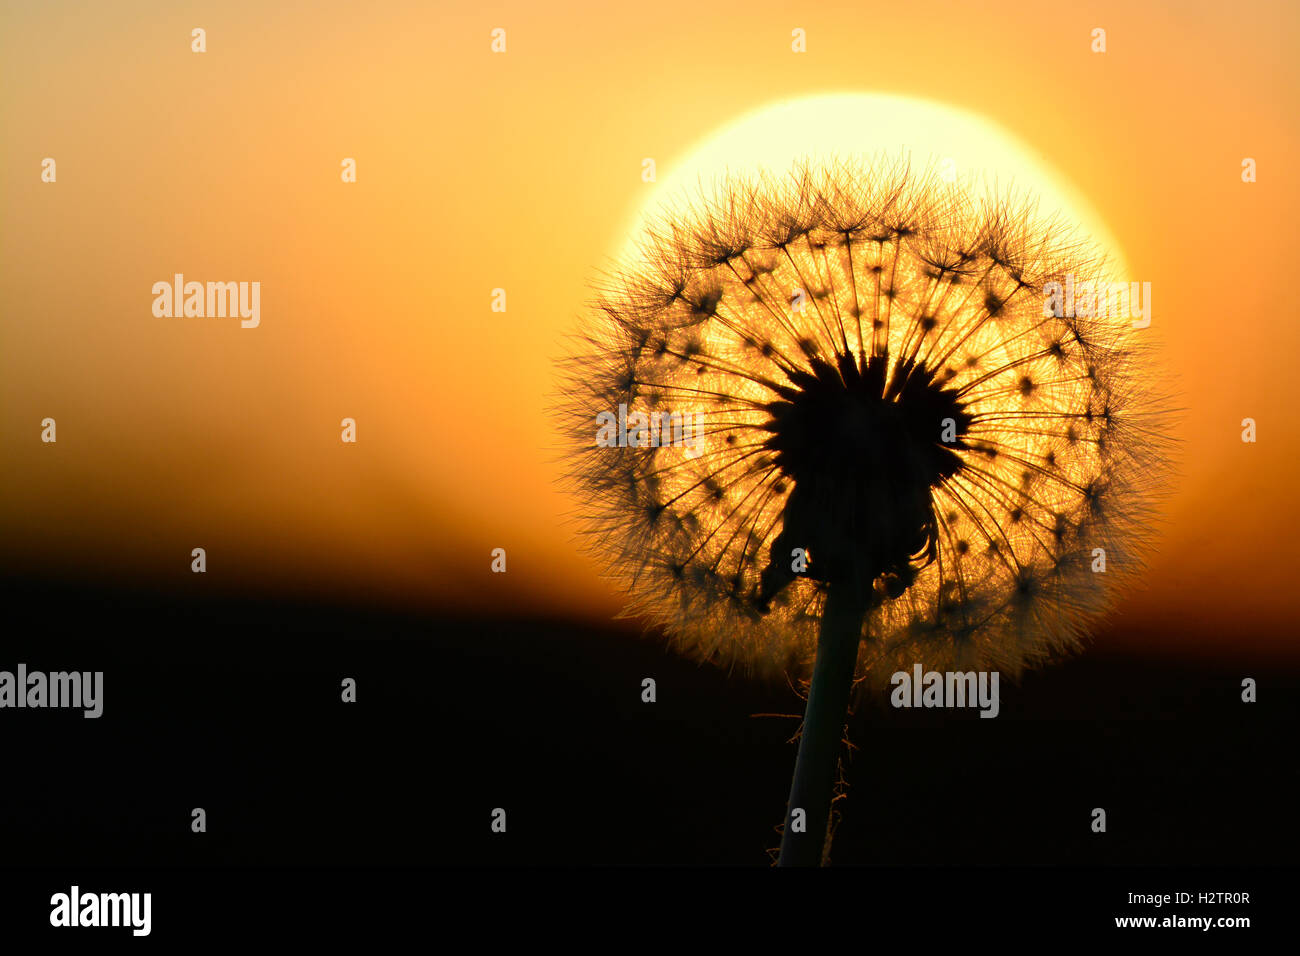 Dettaglio di tarassaco semi di erbacce in presenza di luce solare Foto Stock